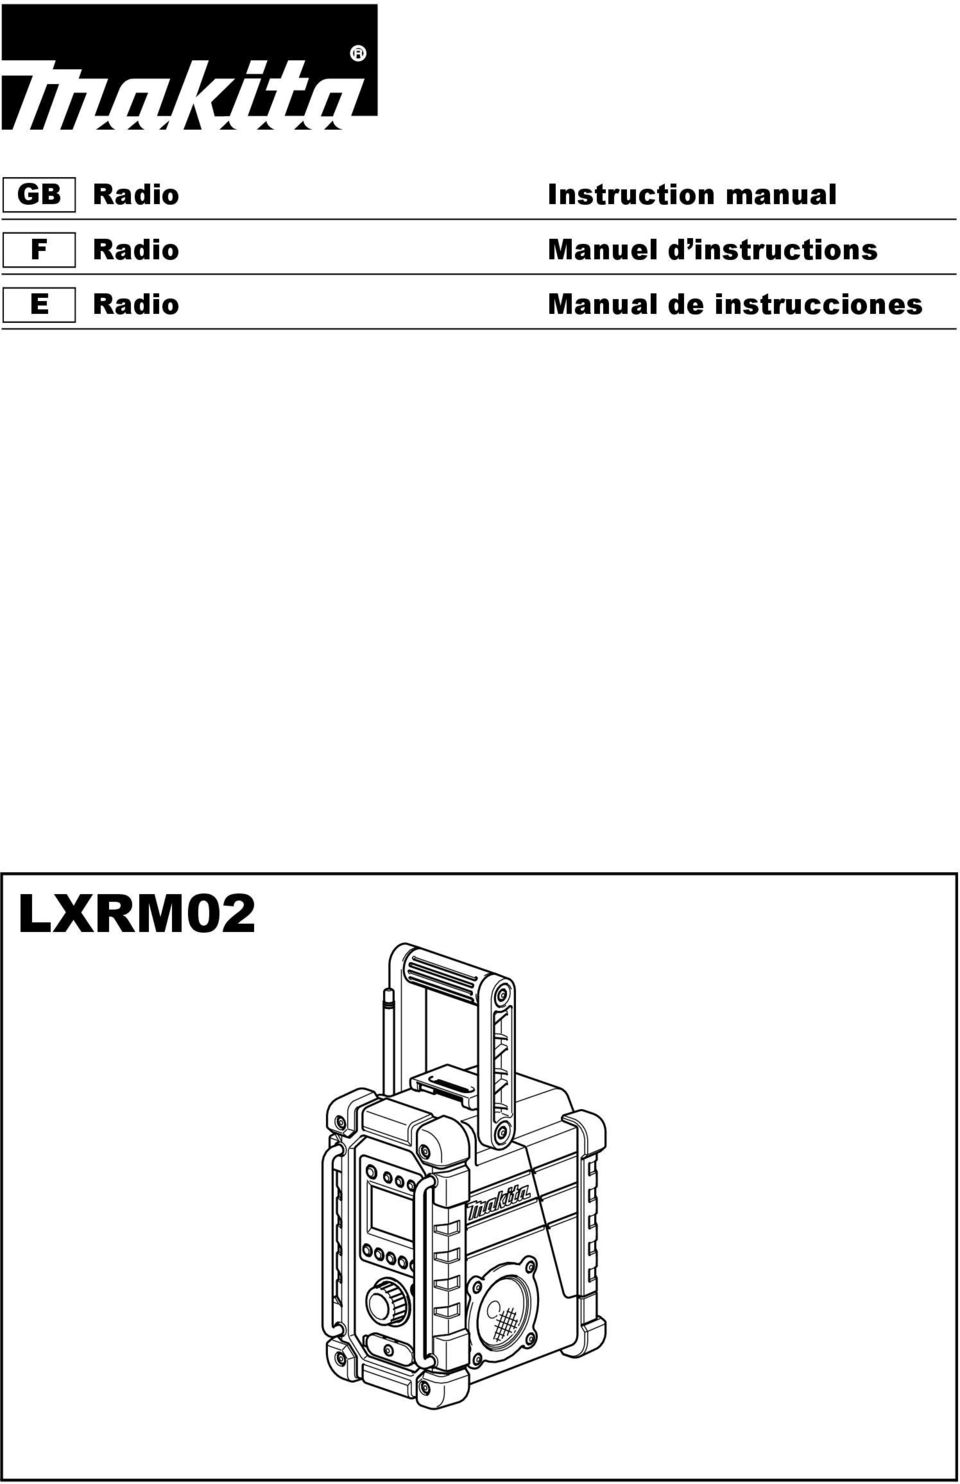 instructions E Radio